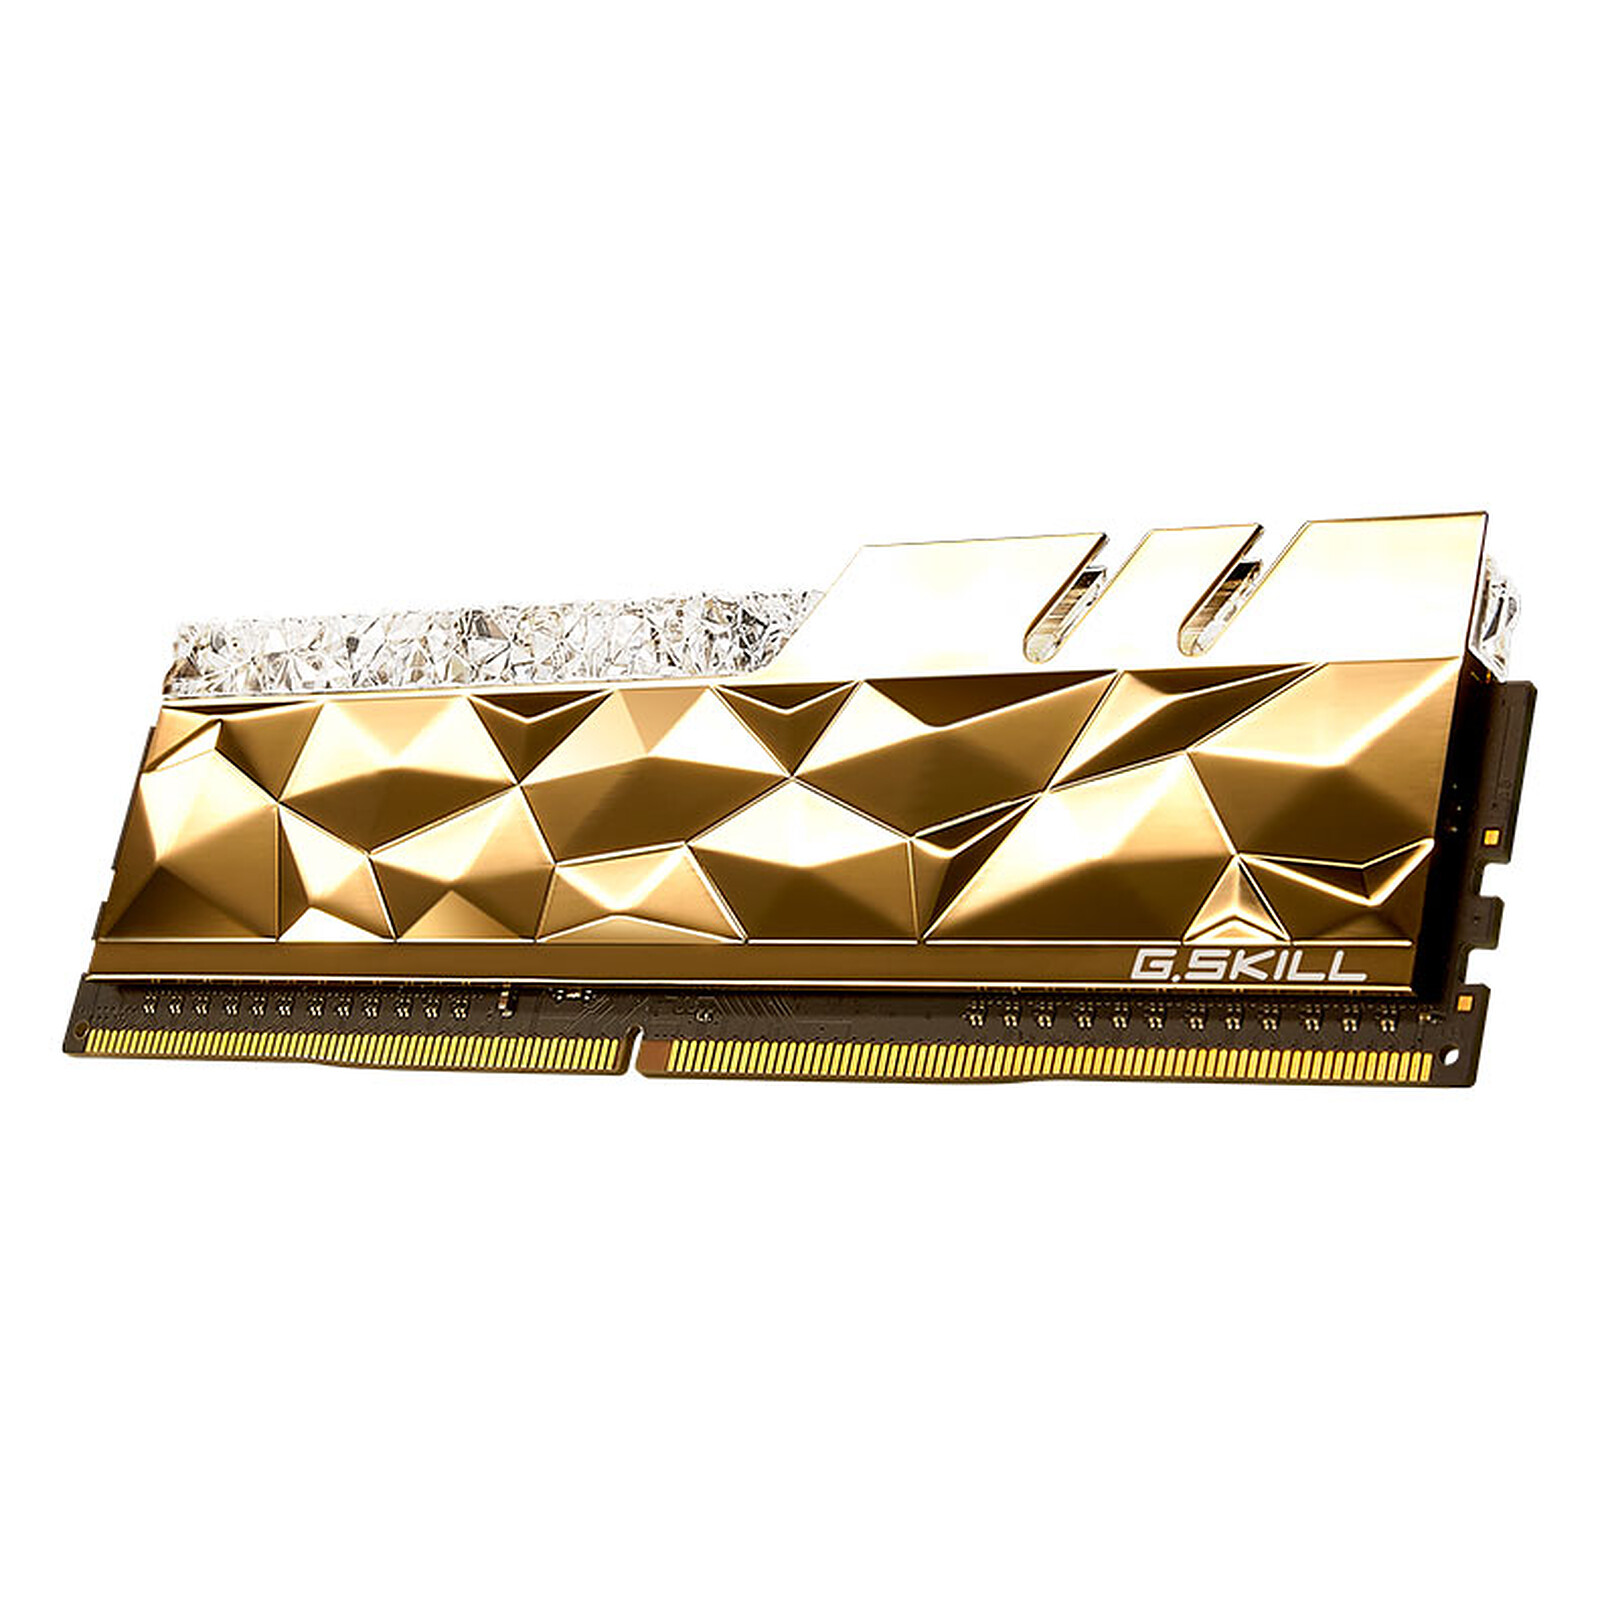 Achetez votre G.Skill Trident Z Royal 32 Go (4x8Go) DDR4 3600 MHz CL14 - Or  au meilleur prix du web – Rue Montgallet